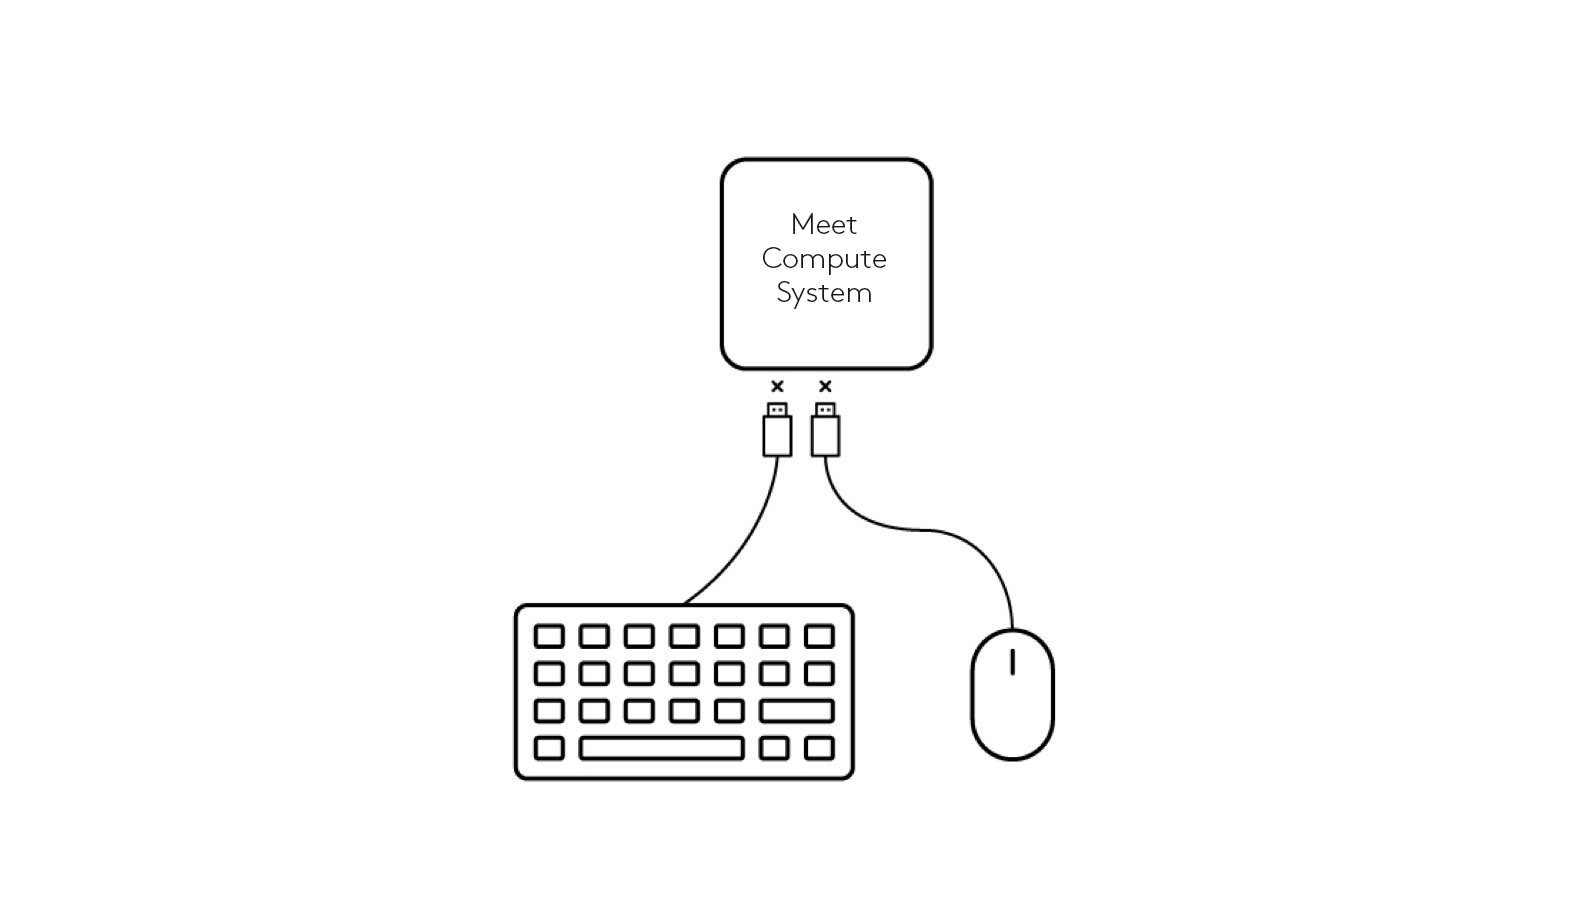 Diagram memutuskan koneksi keyboard dan mouse ke Sistem Komputasi Meet